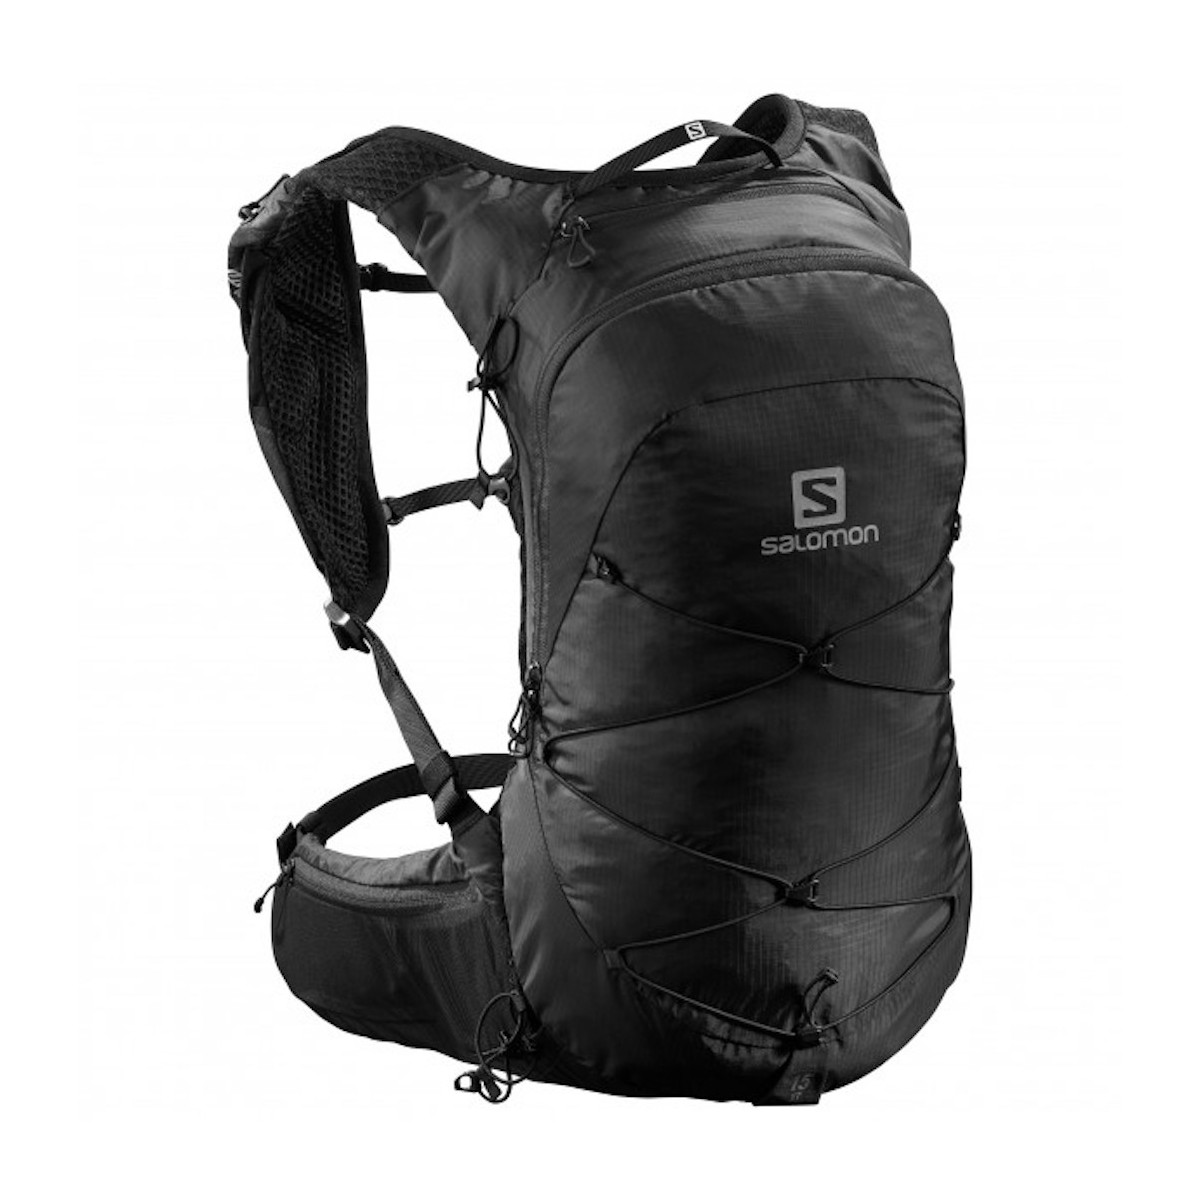 SALOMON XT 15 backpack - black